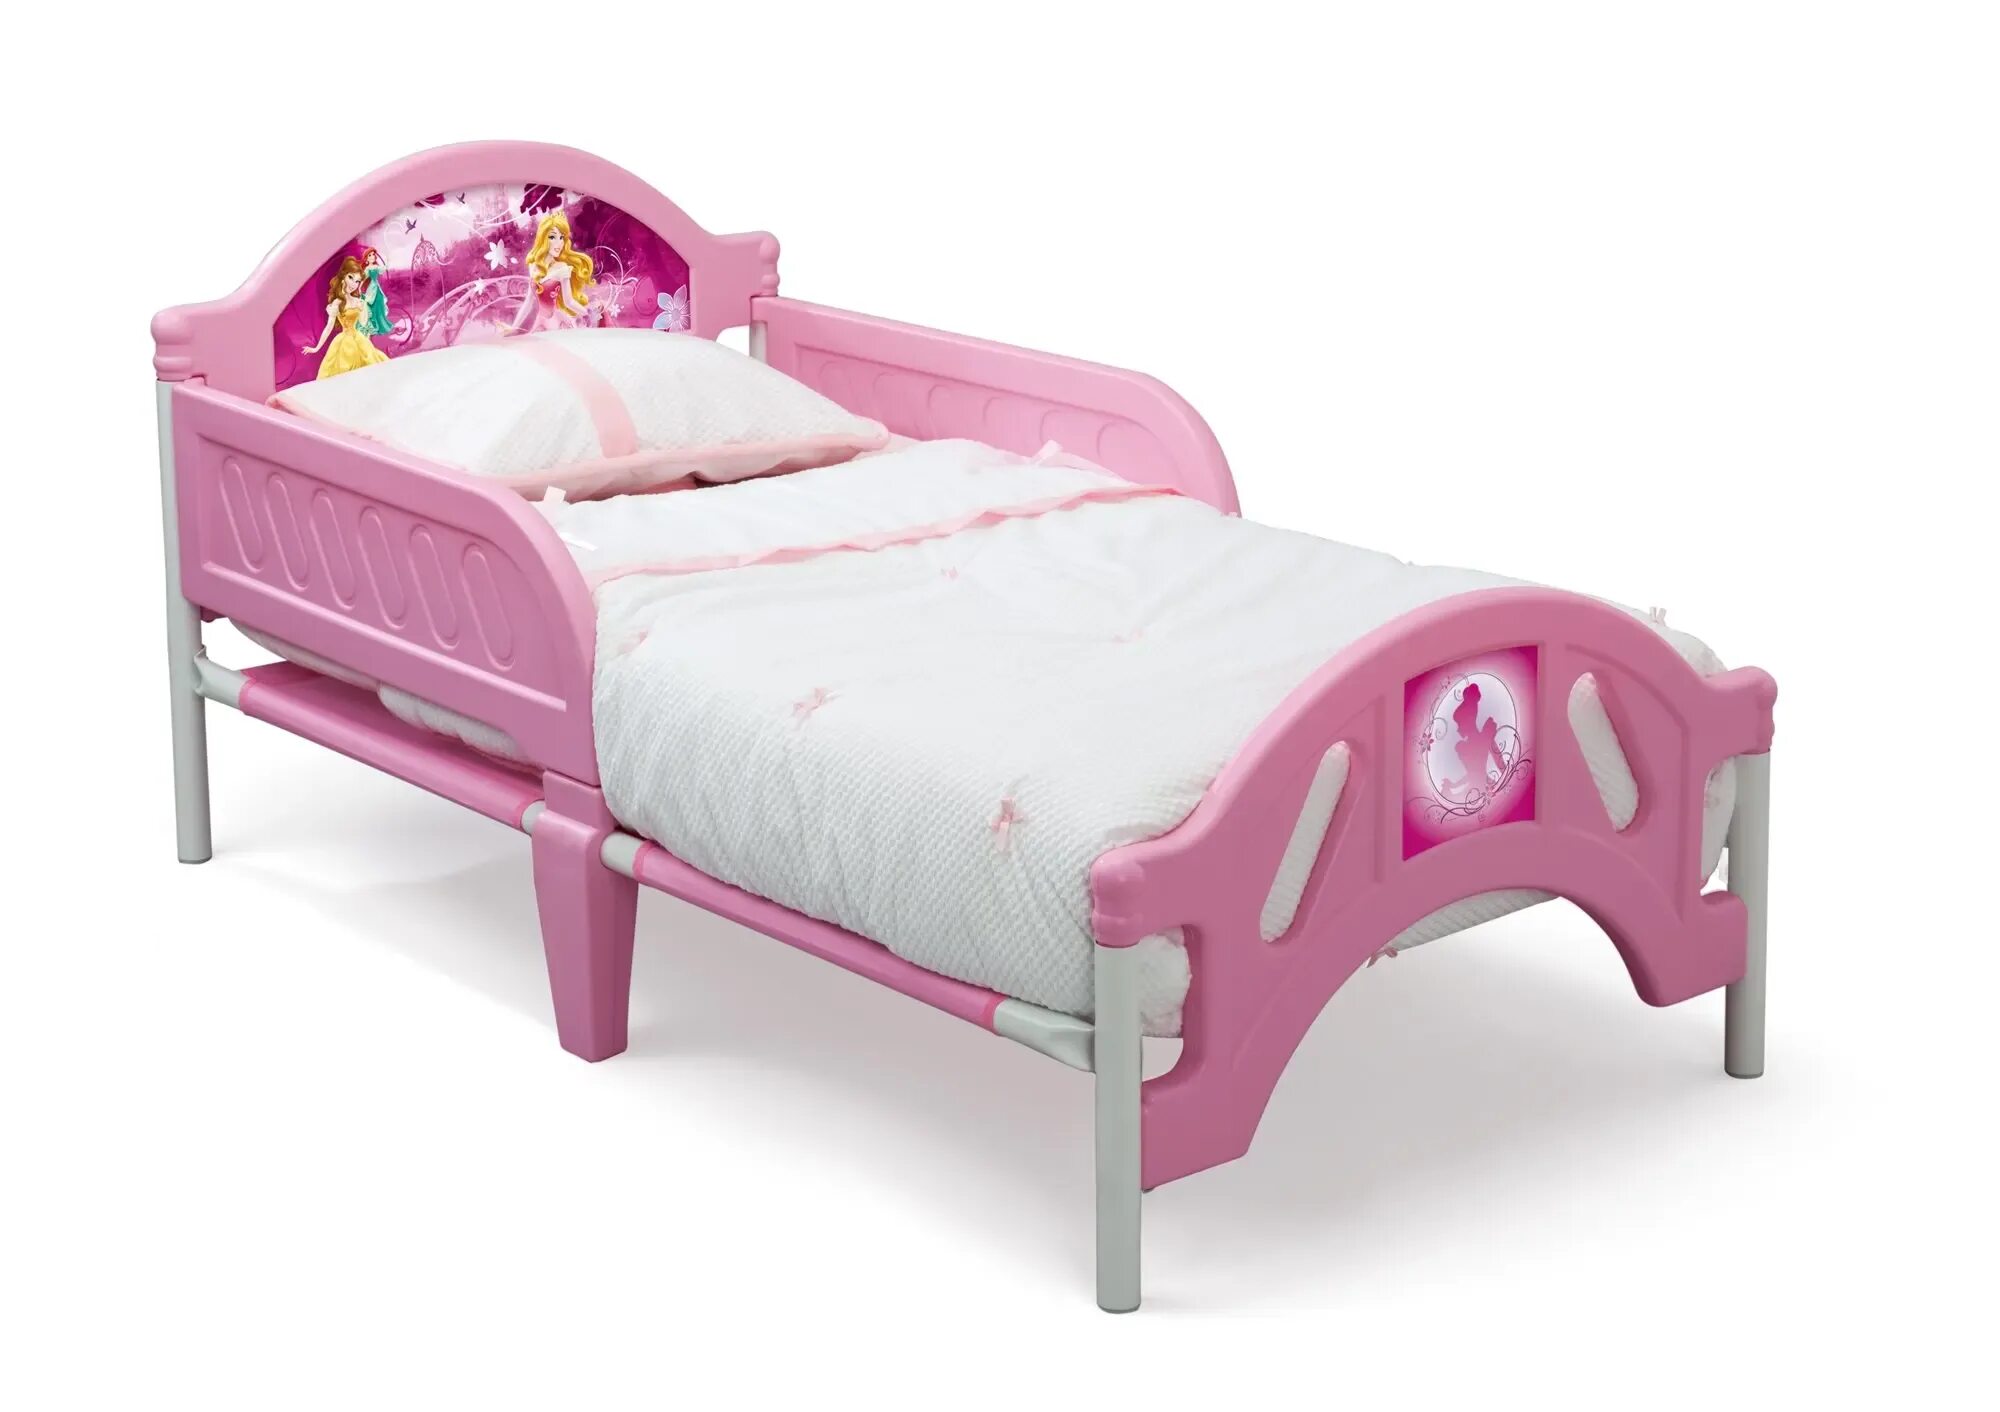 Кровать для принцессы хофф. Хофф кровать детская принцесса. Кроватка для девочки от 3 лет. Кровать для девочки 4 года. Детская кровать от 3х лет